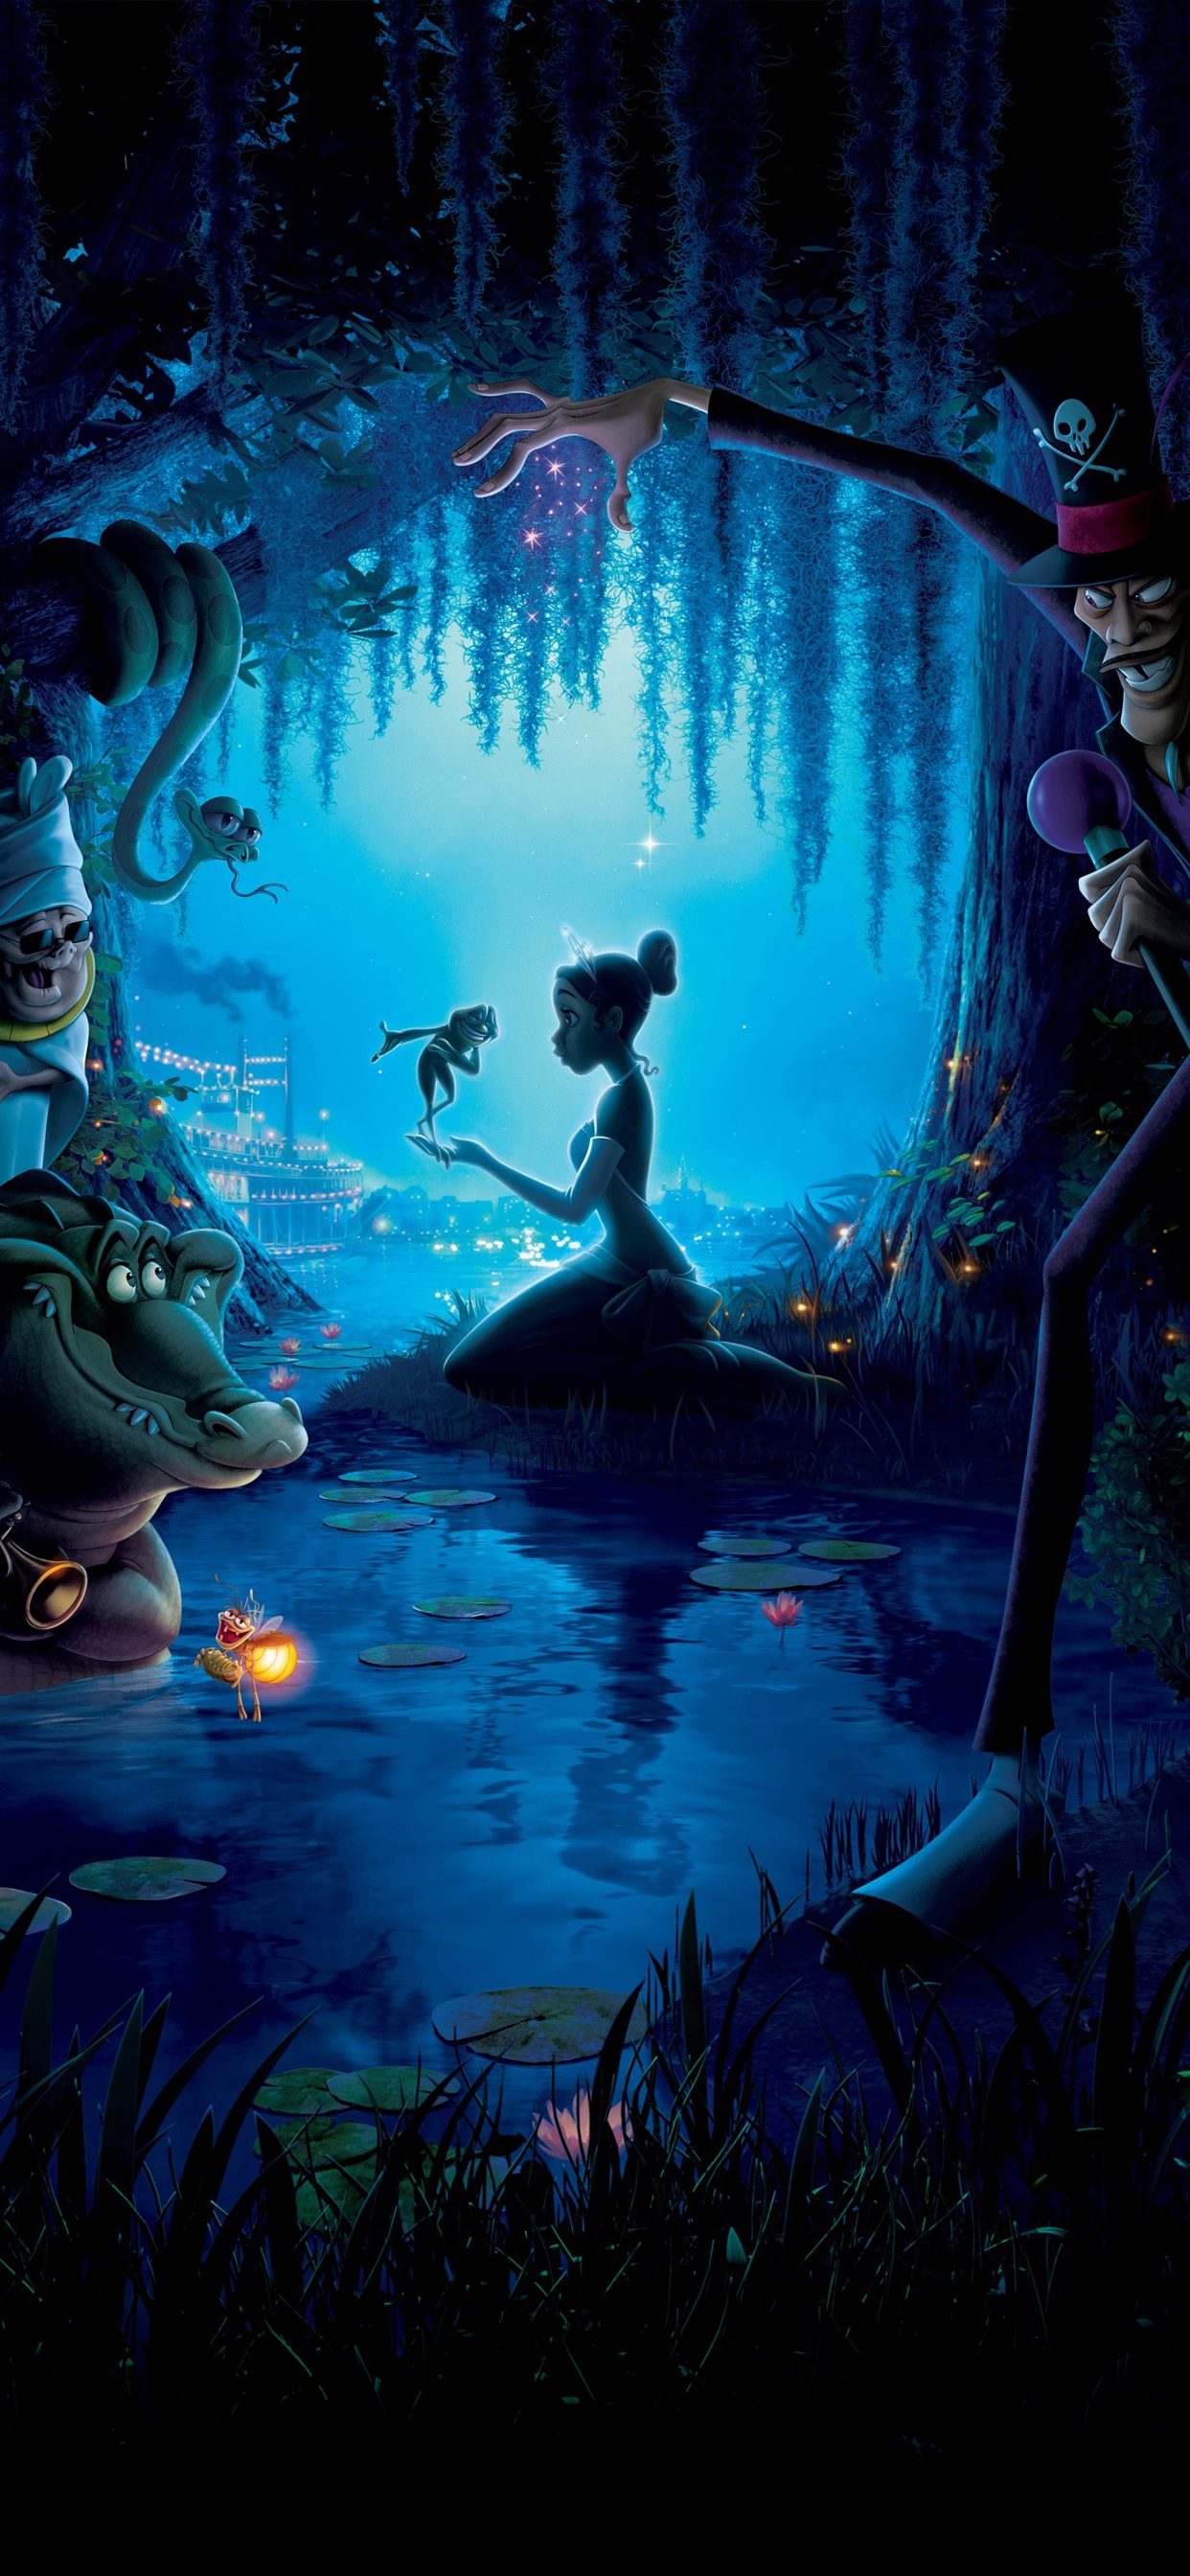 公主和青蛙 The Princess and the Frog(2009)